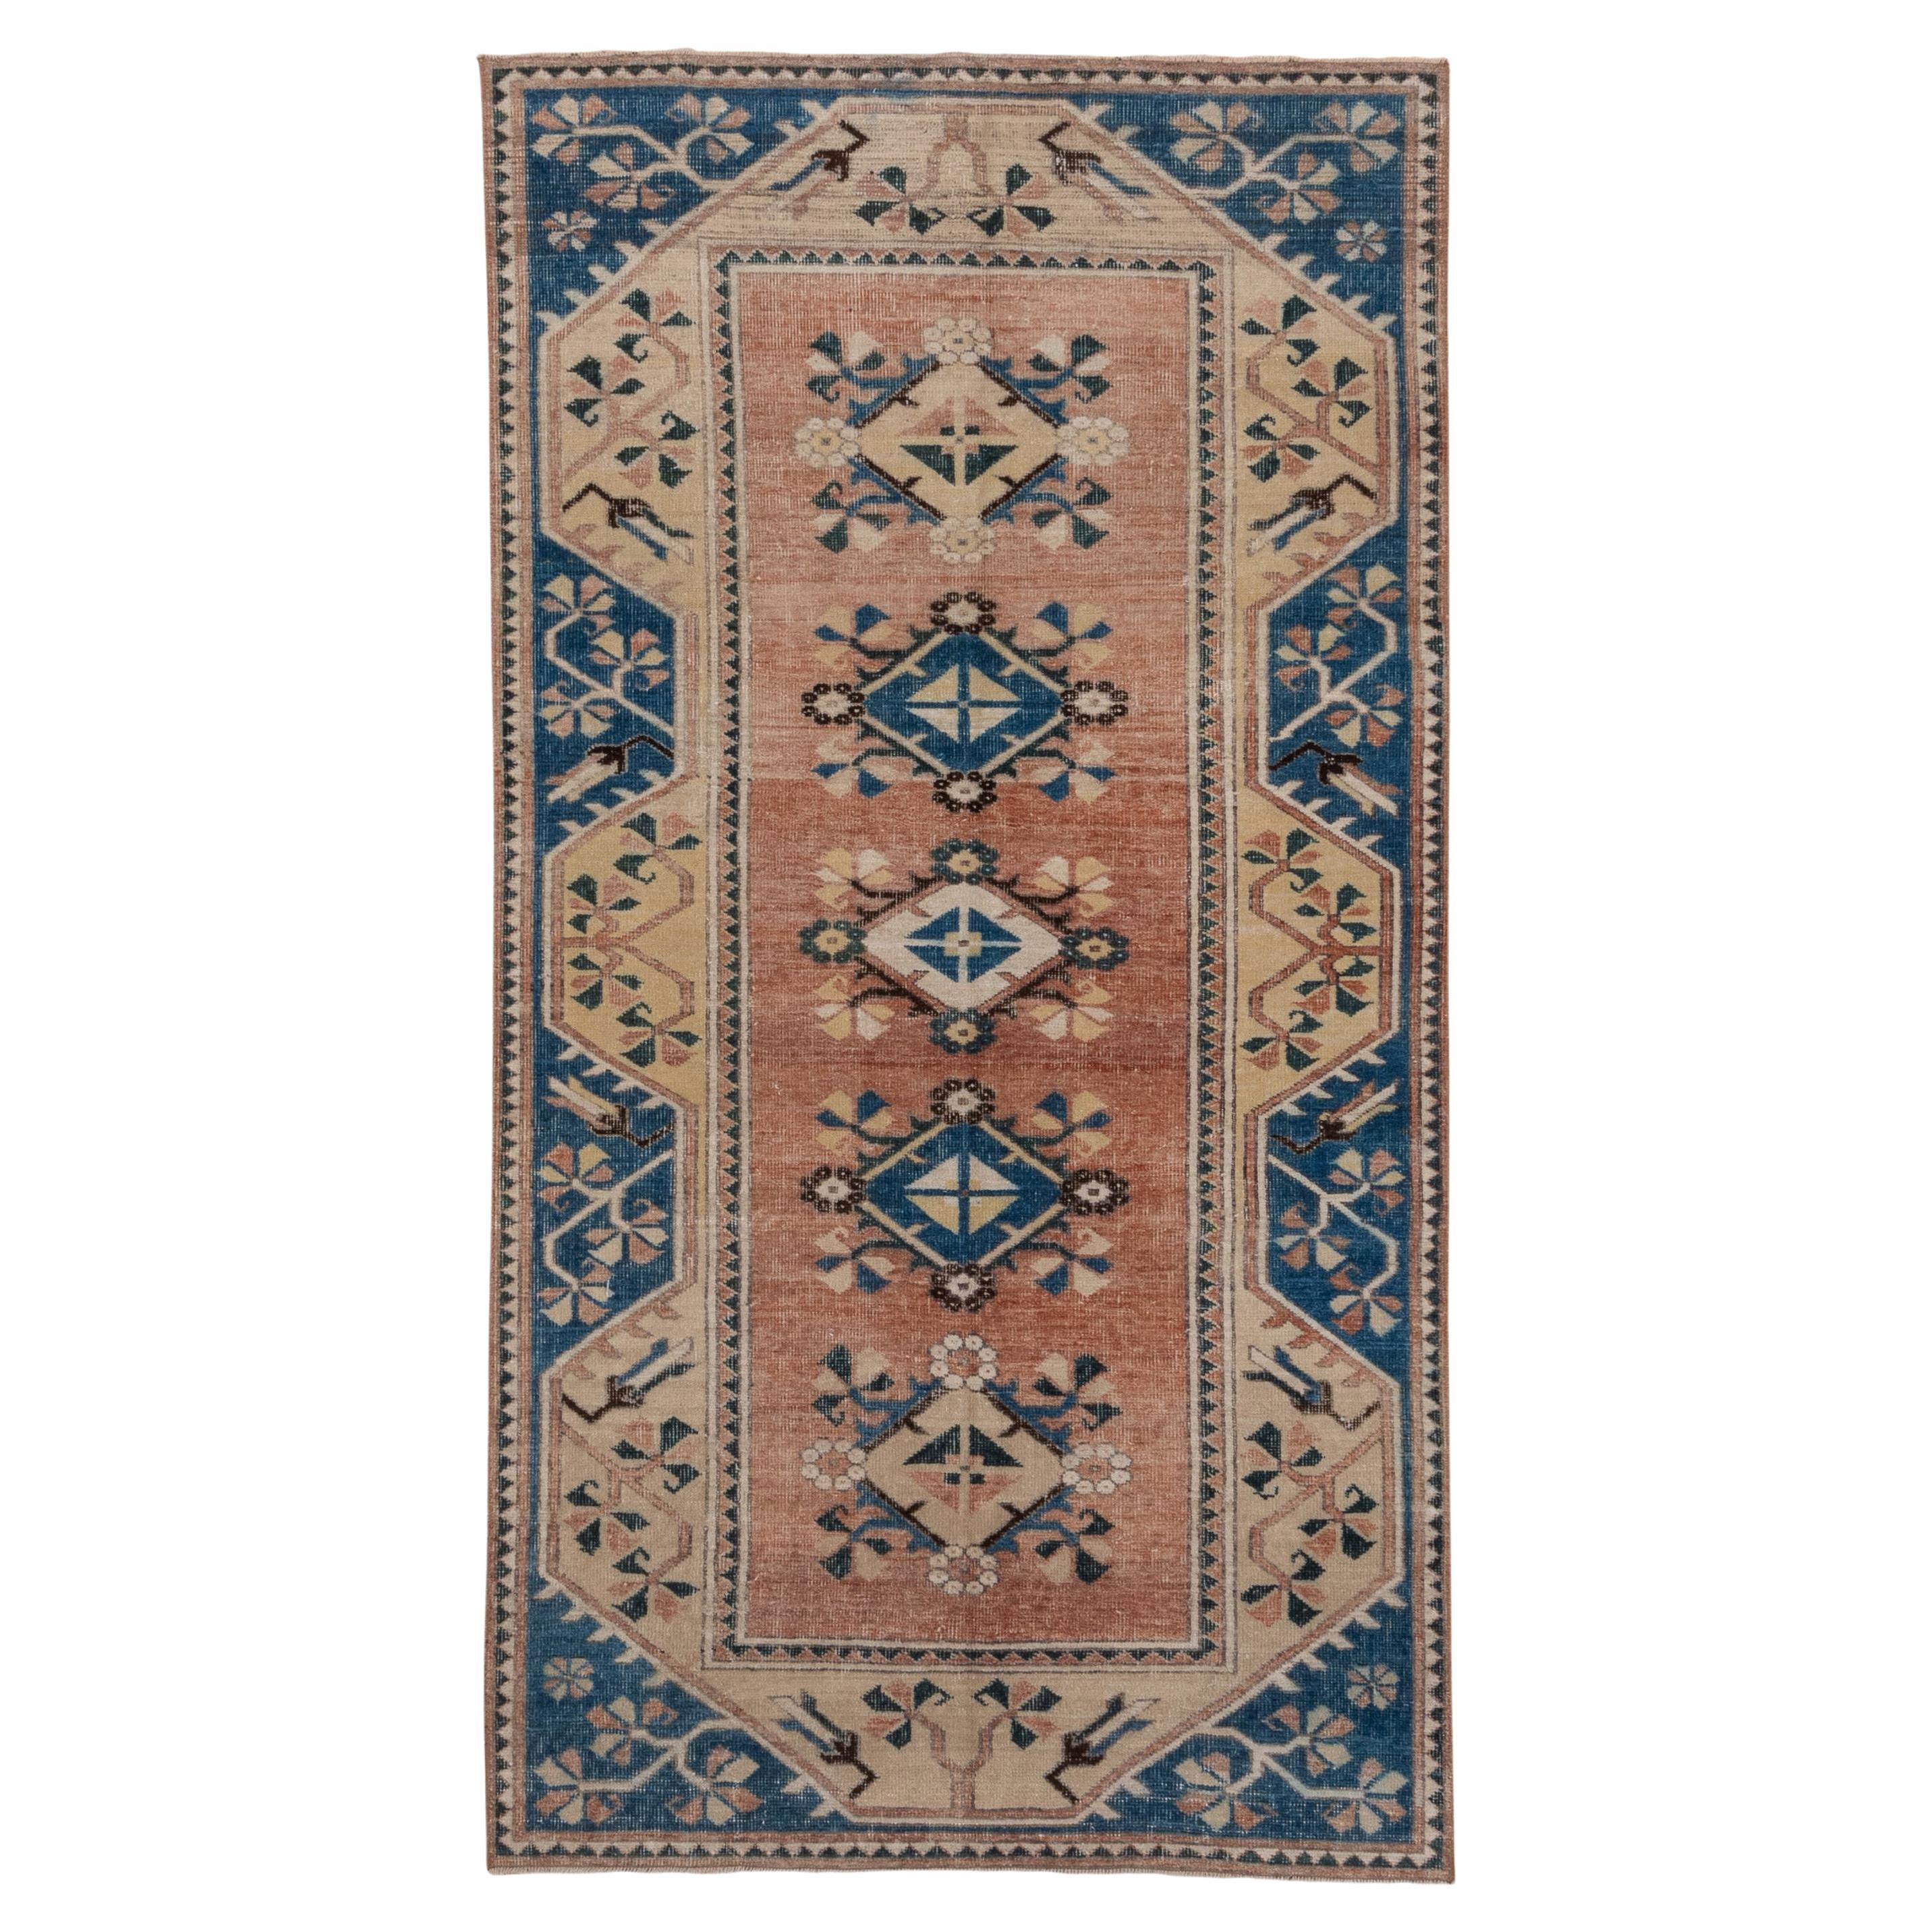 Türkischer Oushak-Teppich im Vintage-Stil, Lachs FIeld, blaue und elfenbeinfarbene Bordüren